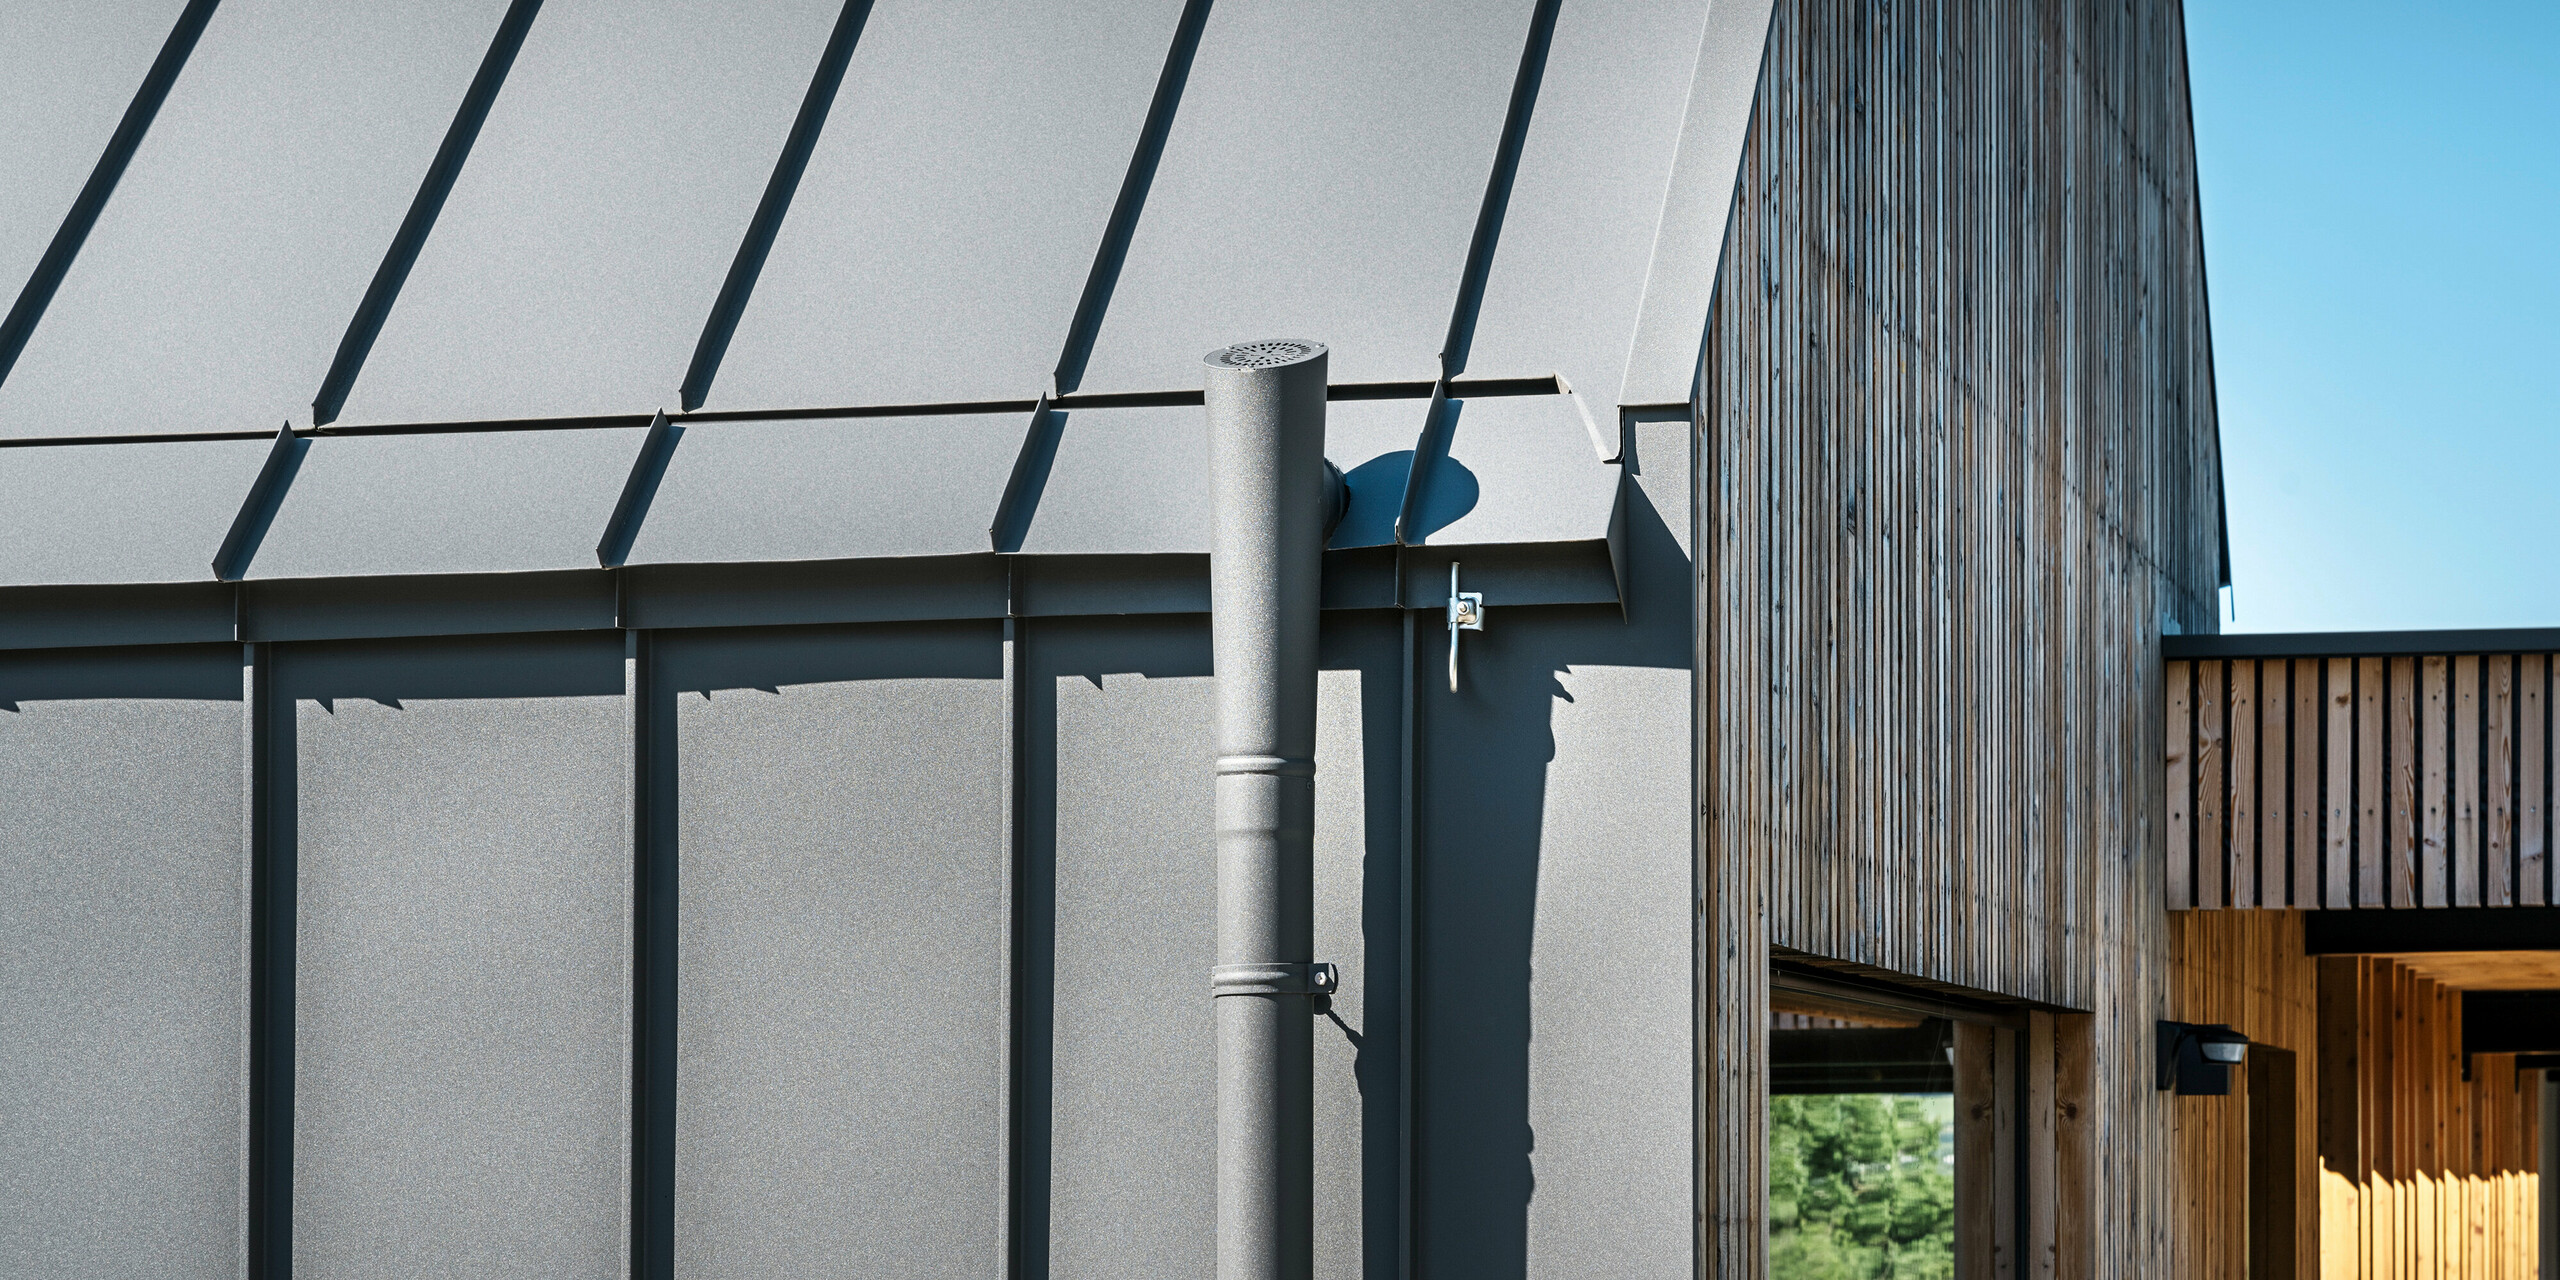 Detailní záběr návrhu střechy a fasády rodinného domu v rakouském Pogier s vysoce kvalitním PREFALZ v P.10 tmavě šedá. Odvodnění střechy je realizováno pomocí barevně sladěného odtokového potrubí, které se plynule integruje do elegantního celkového vzhledu. Kombinace precizních linií střechy či fasády a přírodního dřevěného obkladu vstupního prostoru v pozadí dokresluje estetickou souhru moderních a tradičních stavebních materiálů.